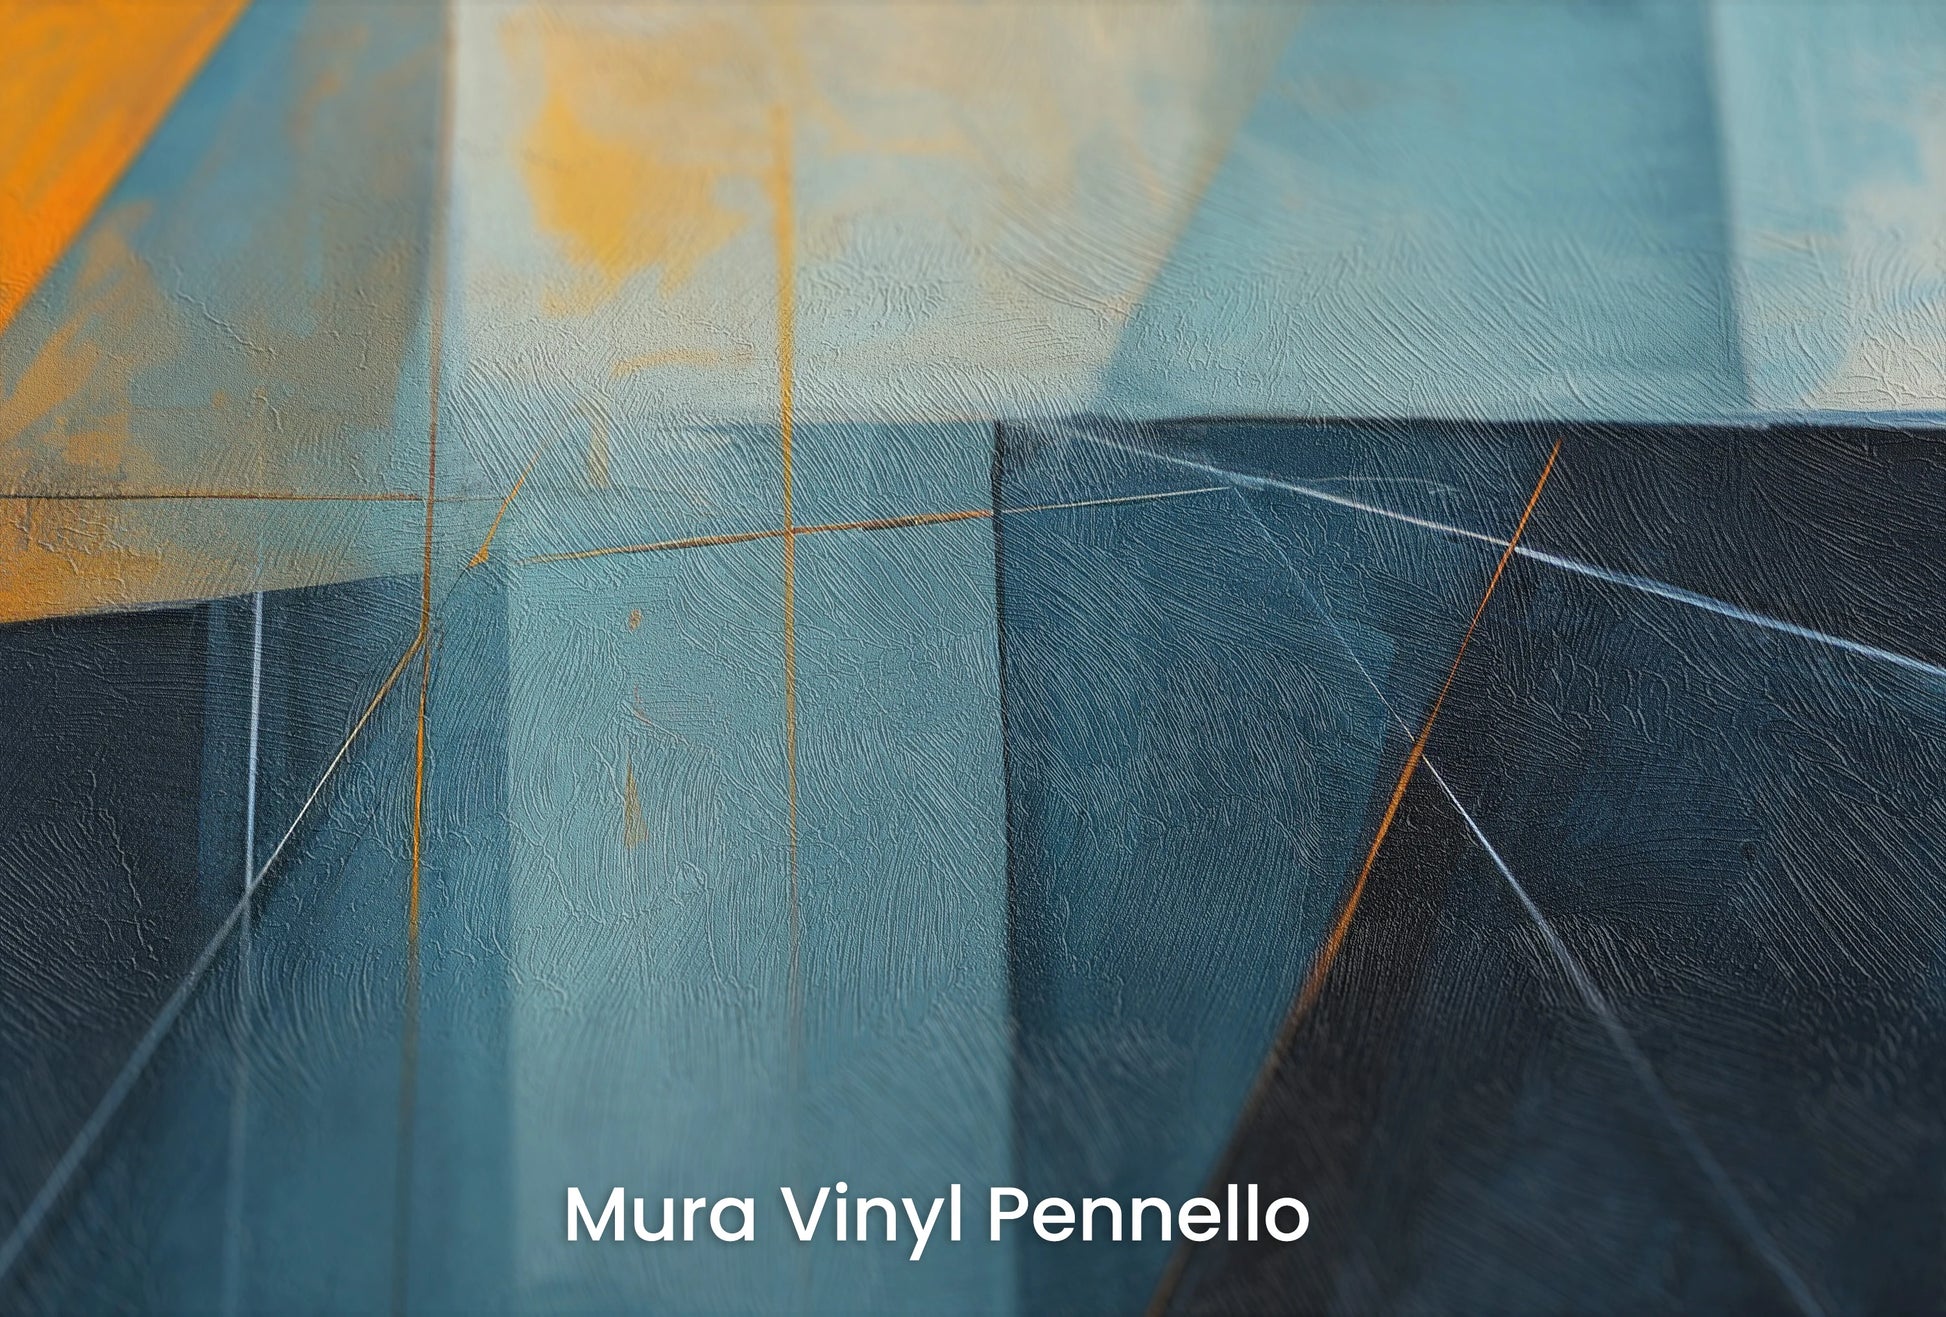 Zbliżenie na artystyczną fototapetę o nazwie Azure Dynamics na podłożu Mura Vinyl Pennello - faktura pociągnięć pędzla malarskiego.